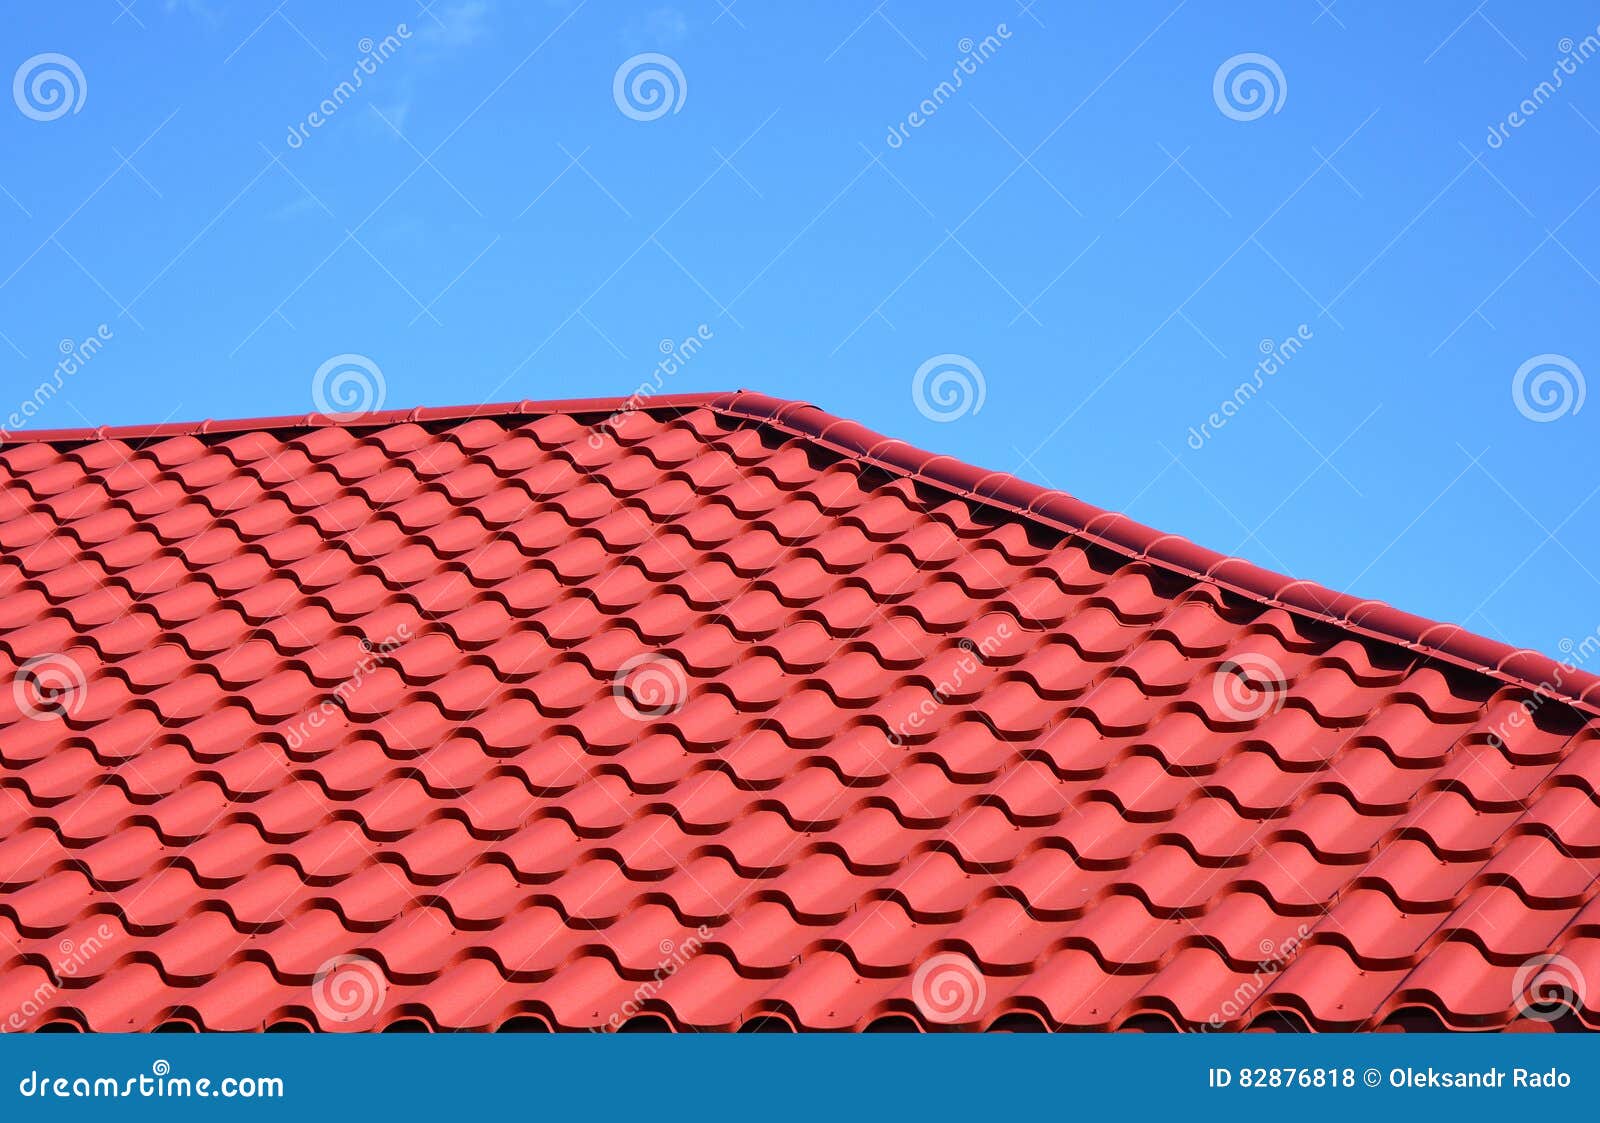 PremiumX Couverture de toit Frankfurt Finkenberger Tuile de toit rouge Couverture de toit Tuile de toit en plastique PVC